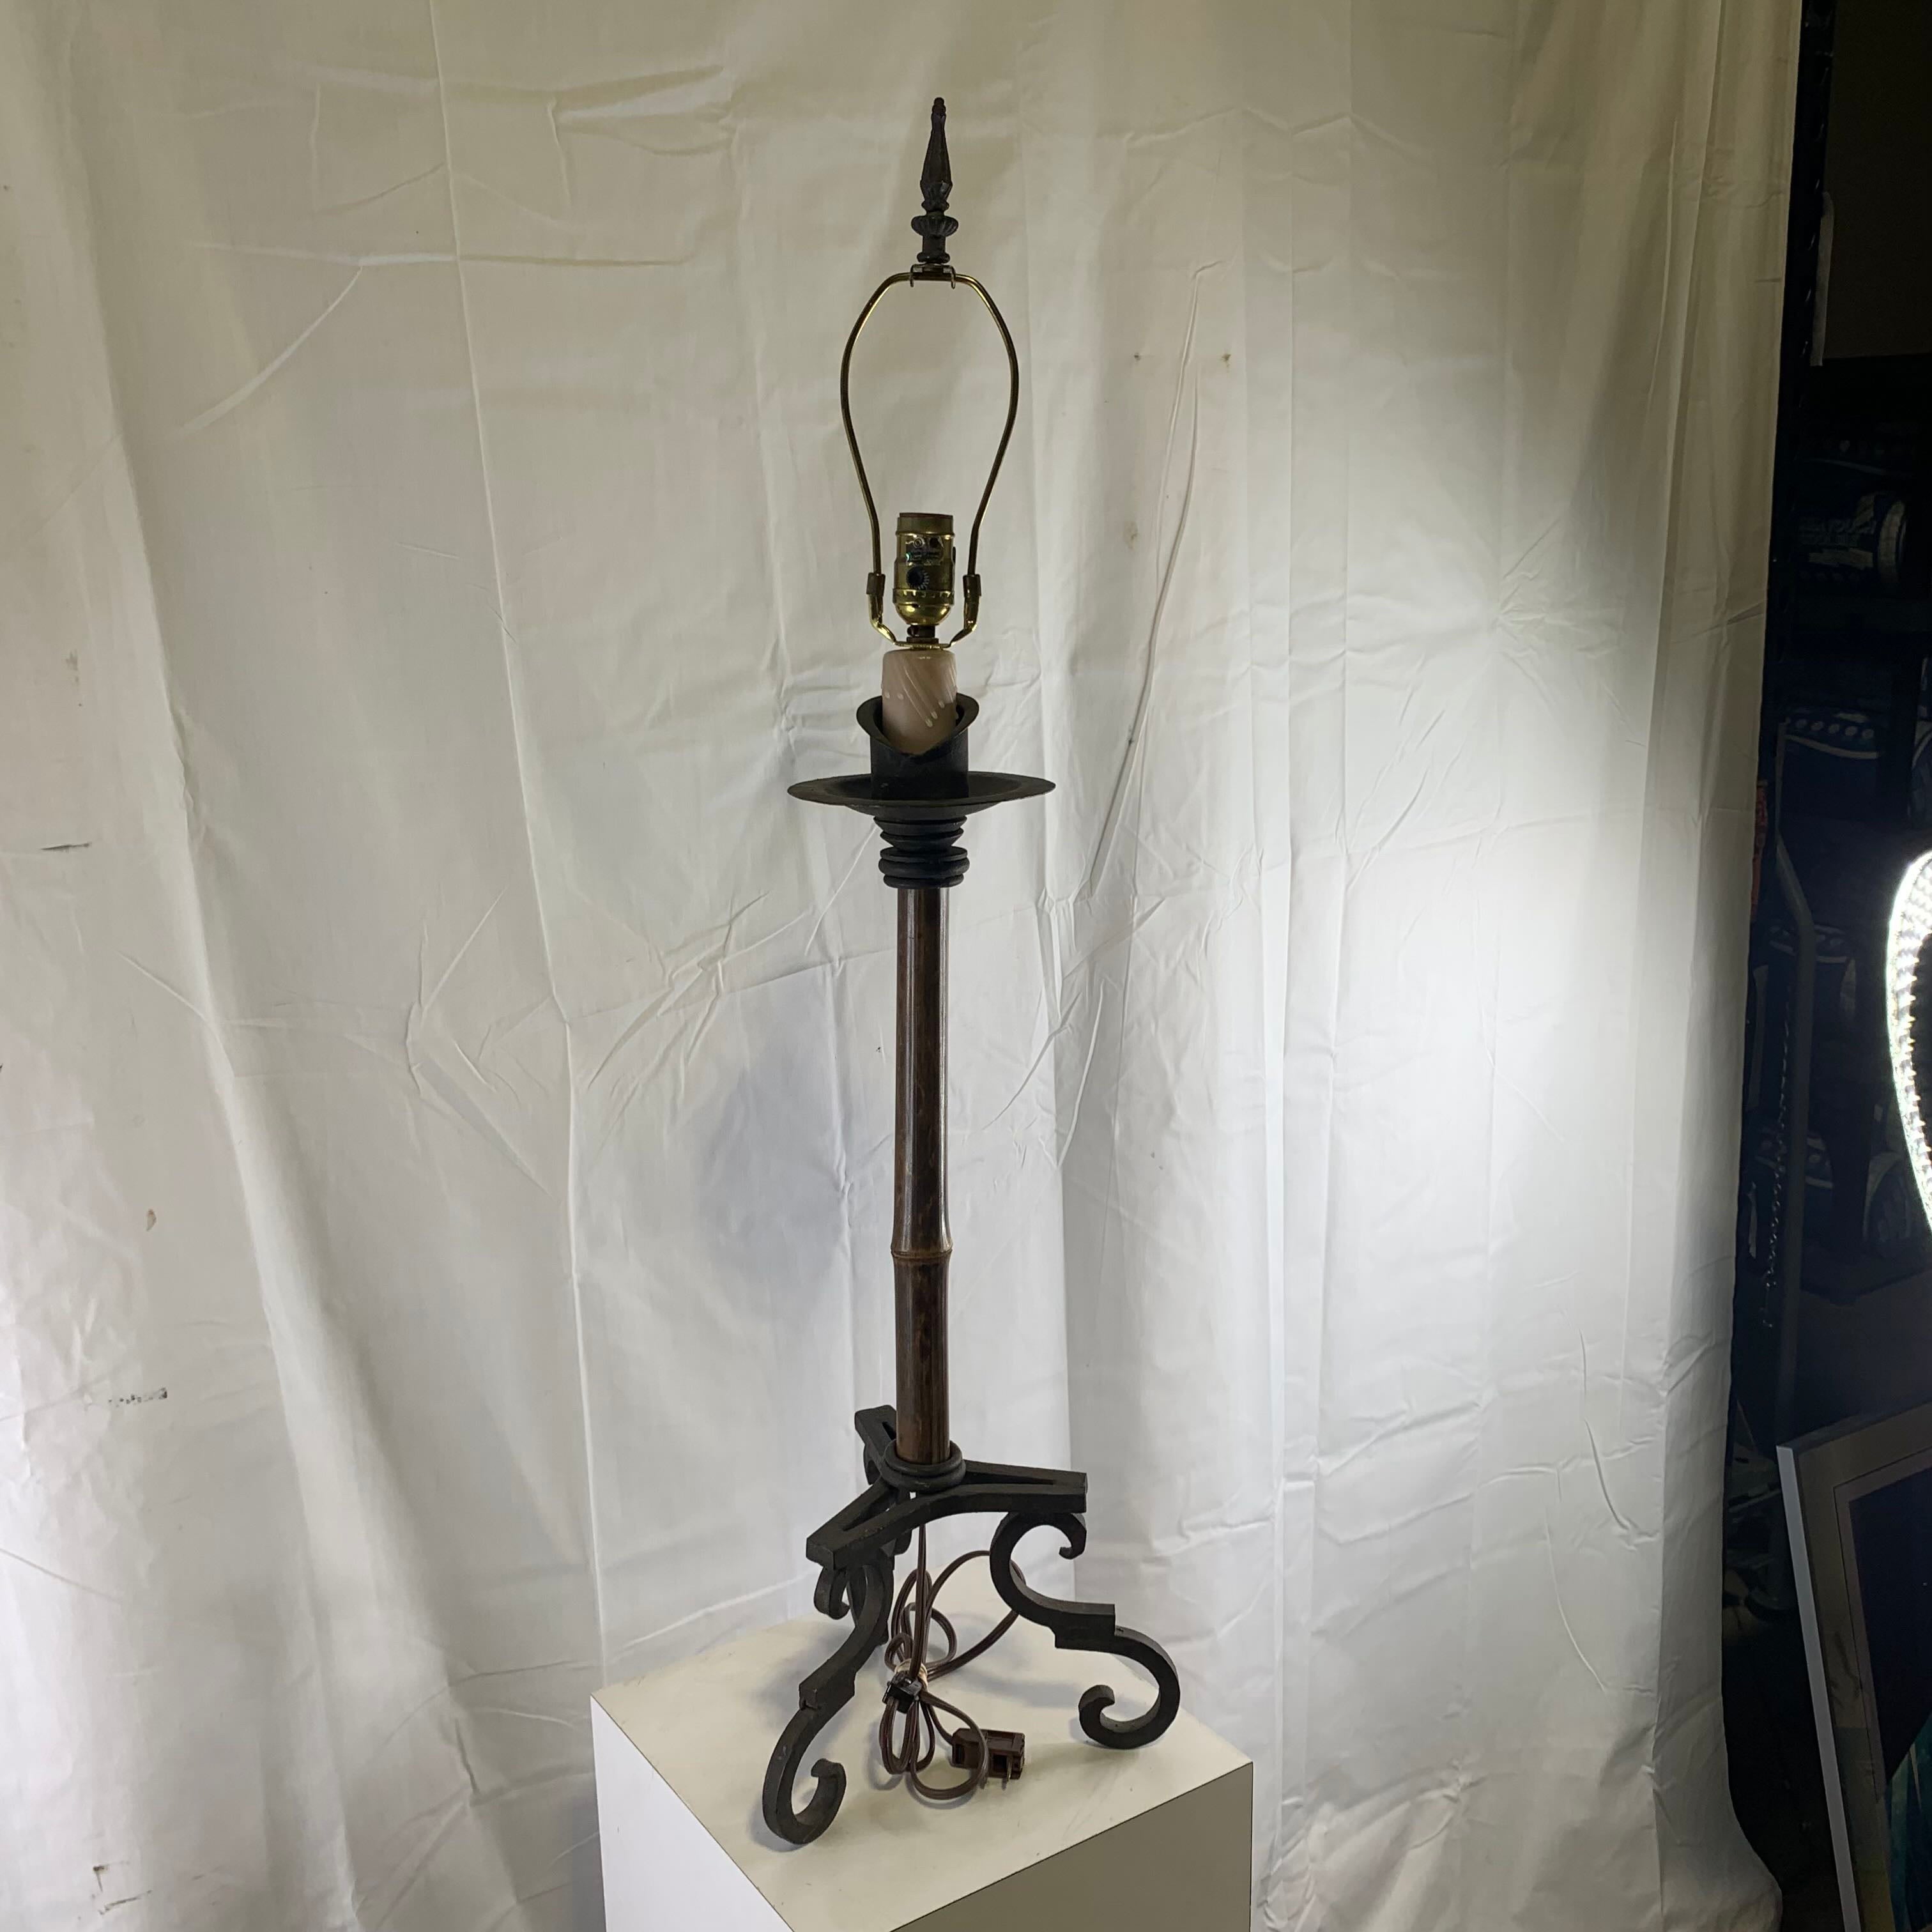 11" Diameter x 38" Laura Lee Designs Single Bamboo Table Lamp